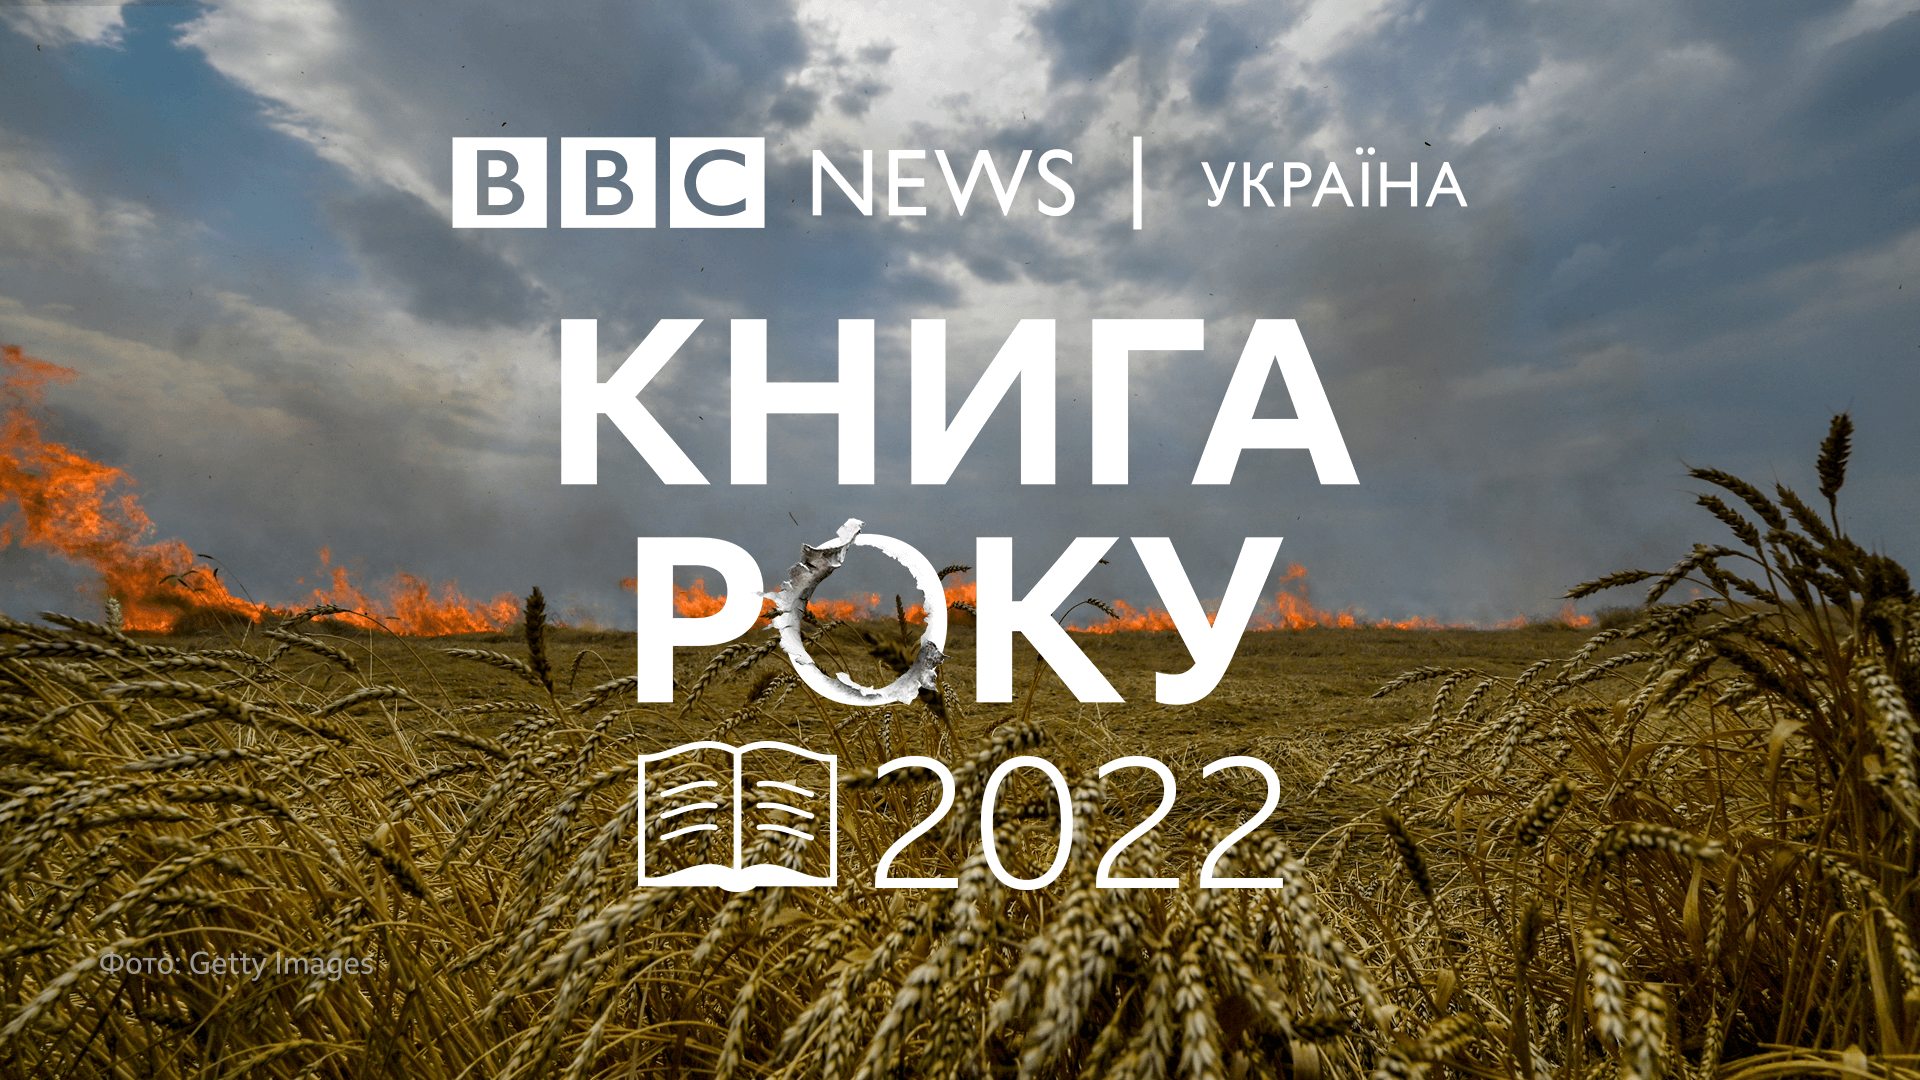 knyha roku bbc 2022 - Конкурс «Книга року BBC 2022» відбудеться